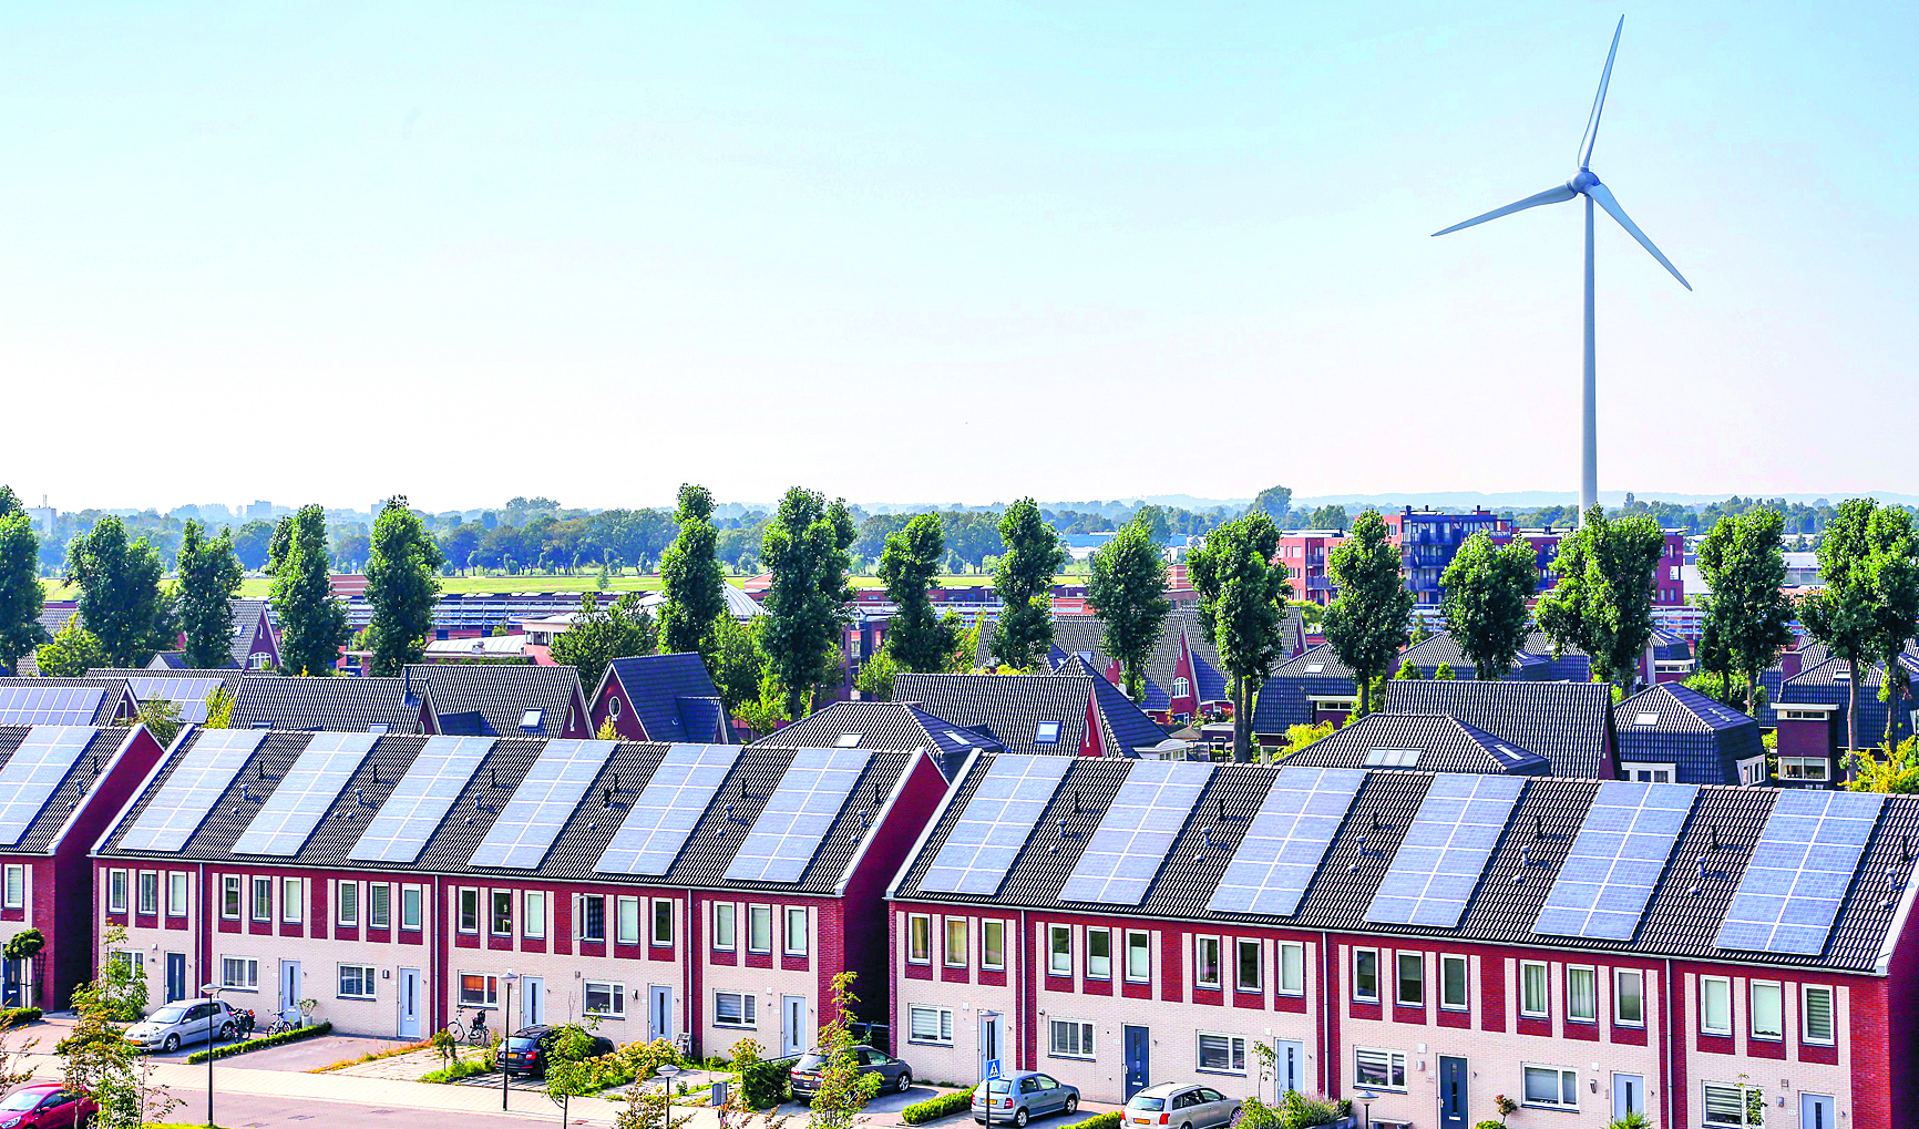 Duurzame energiebronnen in Stad van de Zon in Heerhugowaard.